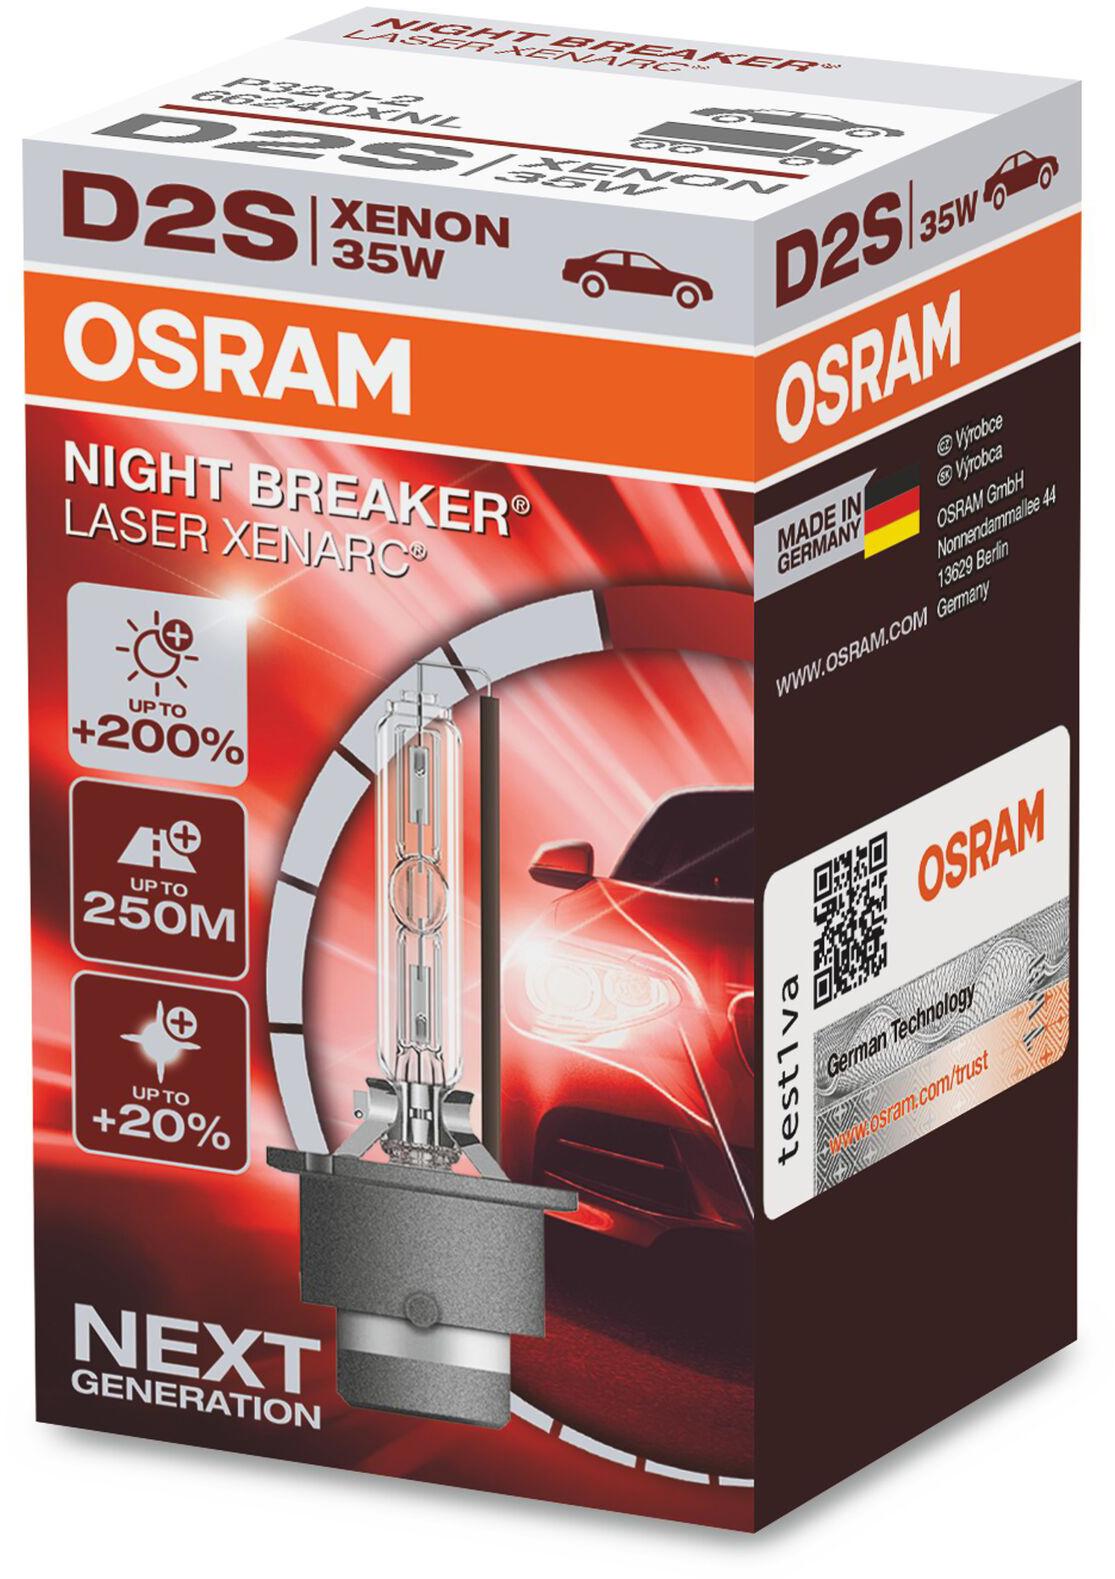 Osram D2S 85V 35W +200 Percent Brighter Xenarc